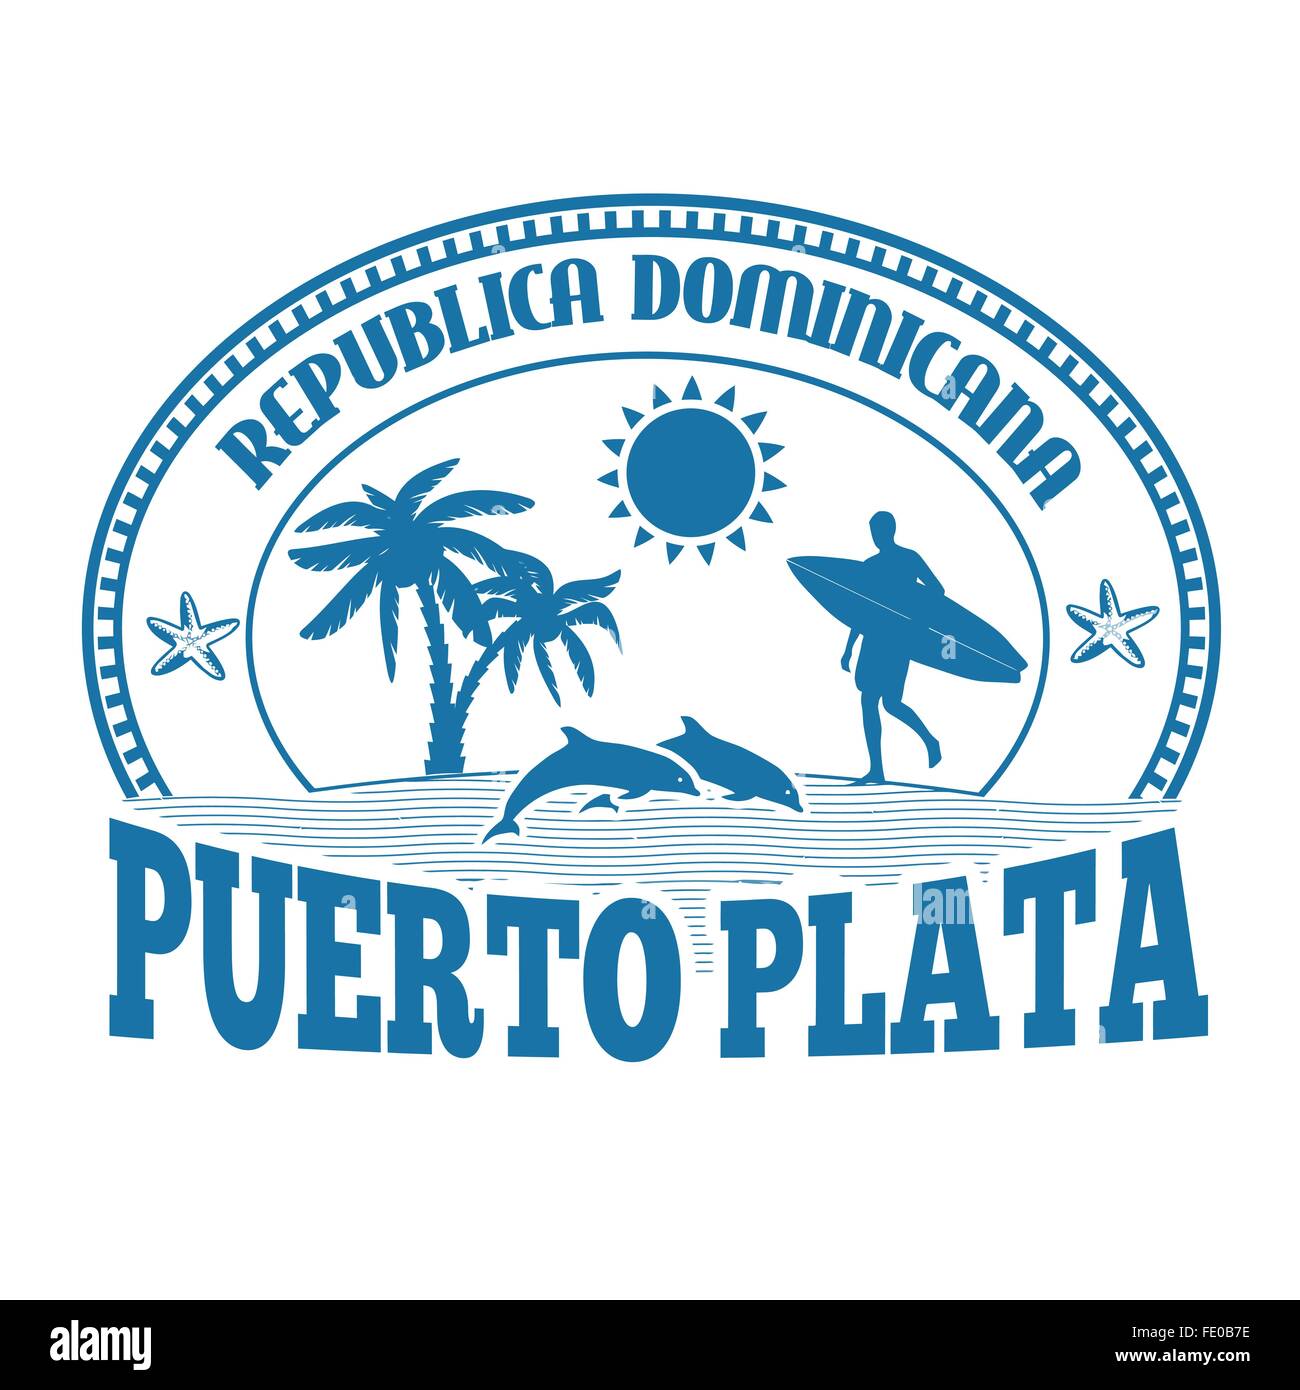 Puerto Plata, Dominikanische Republik, Stempel oder Beschriftung auf weißem Hintergrund, Vektor-illustration Stock Vektor